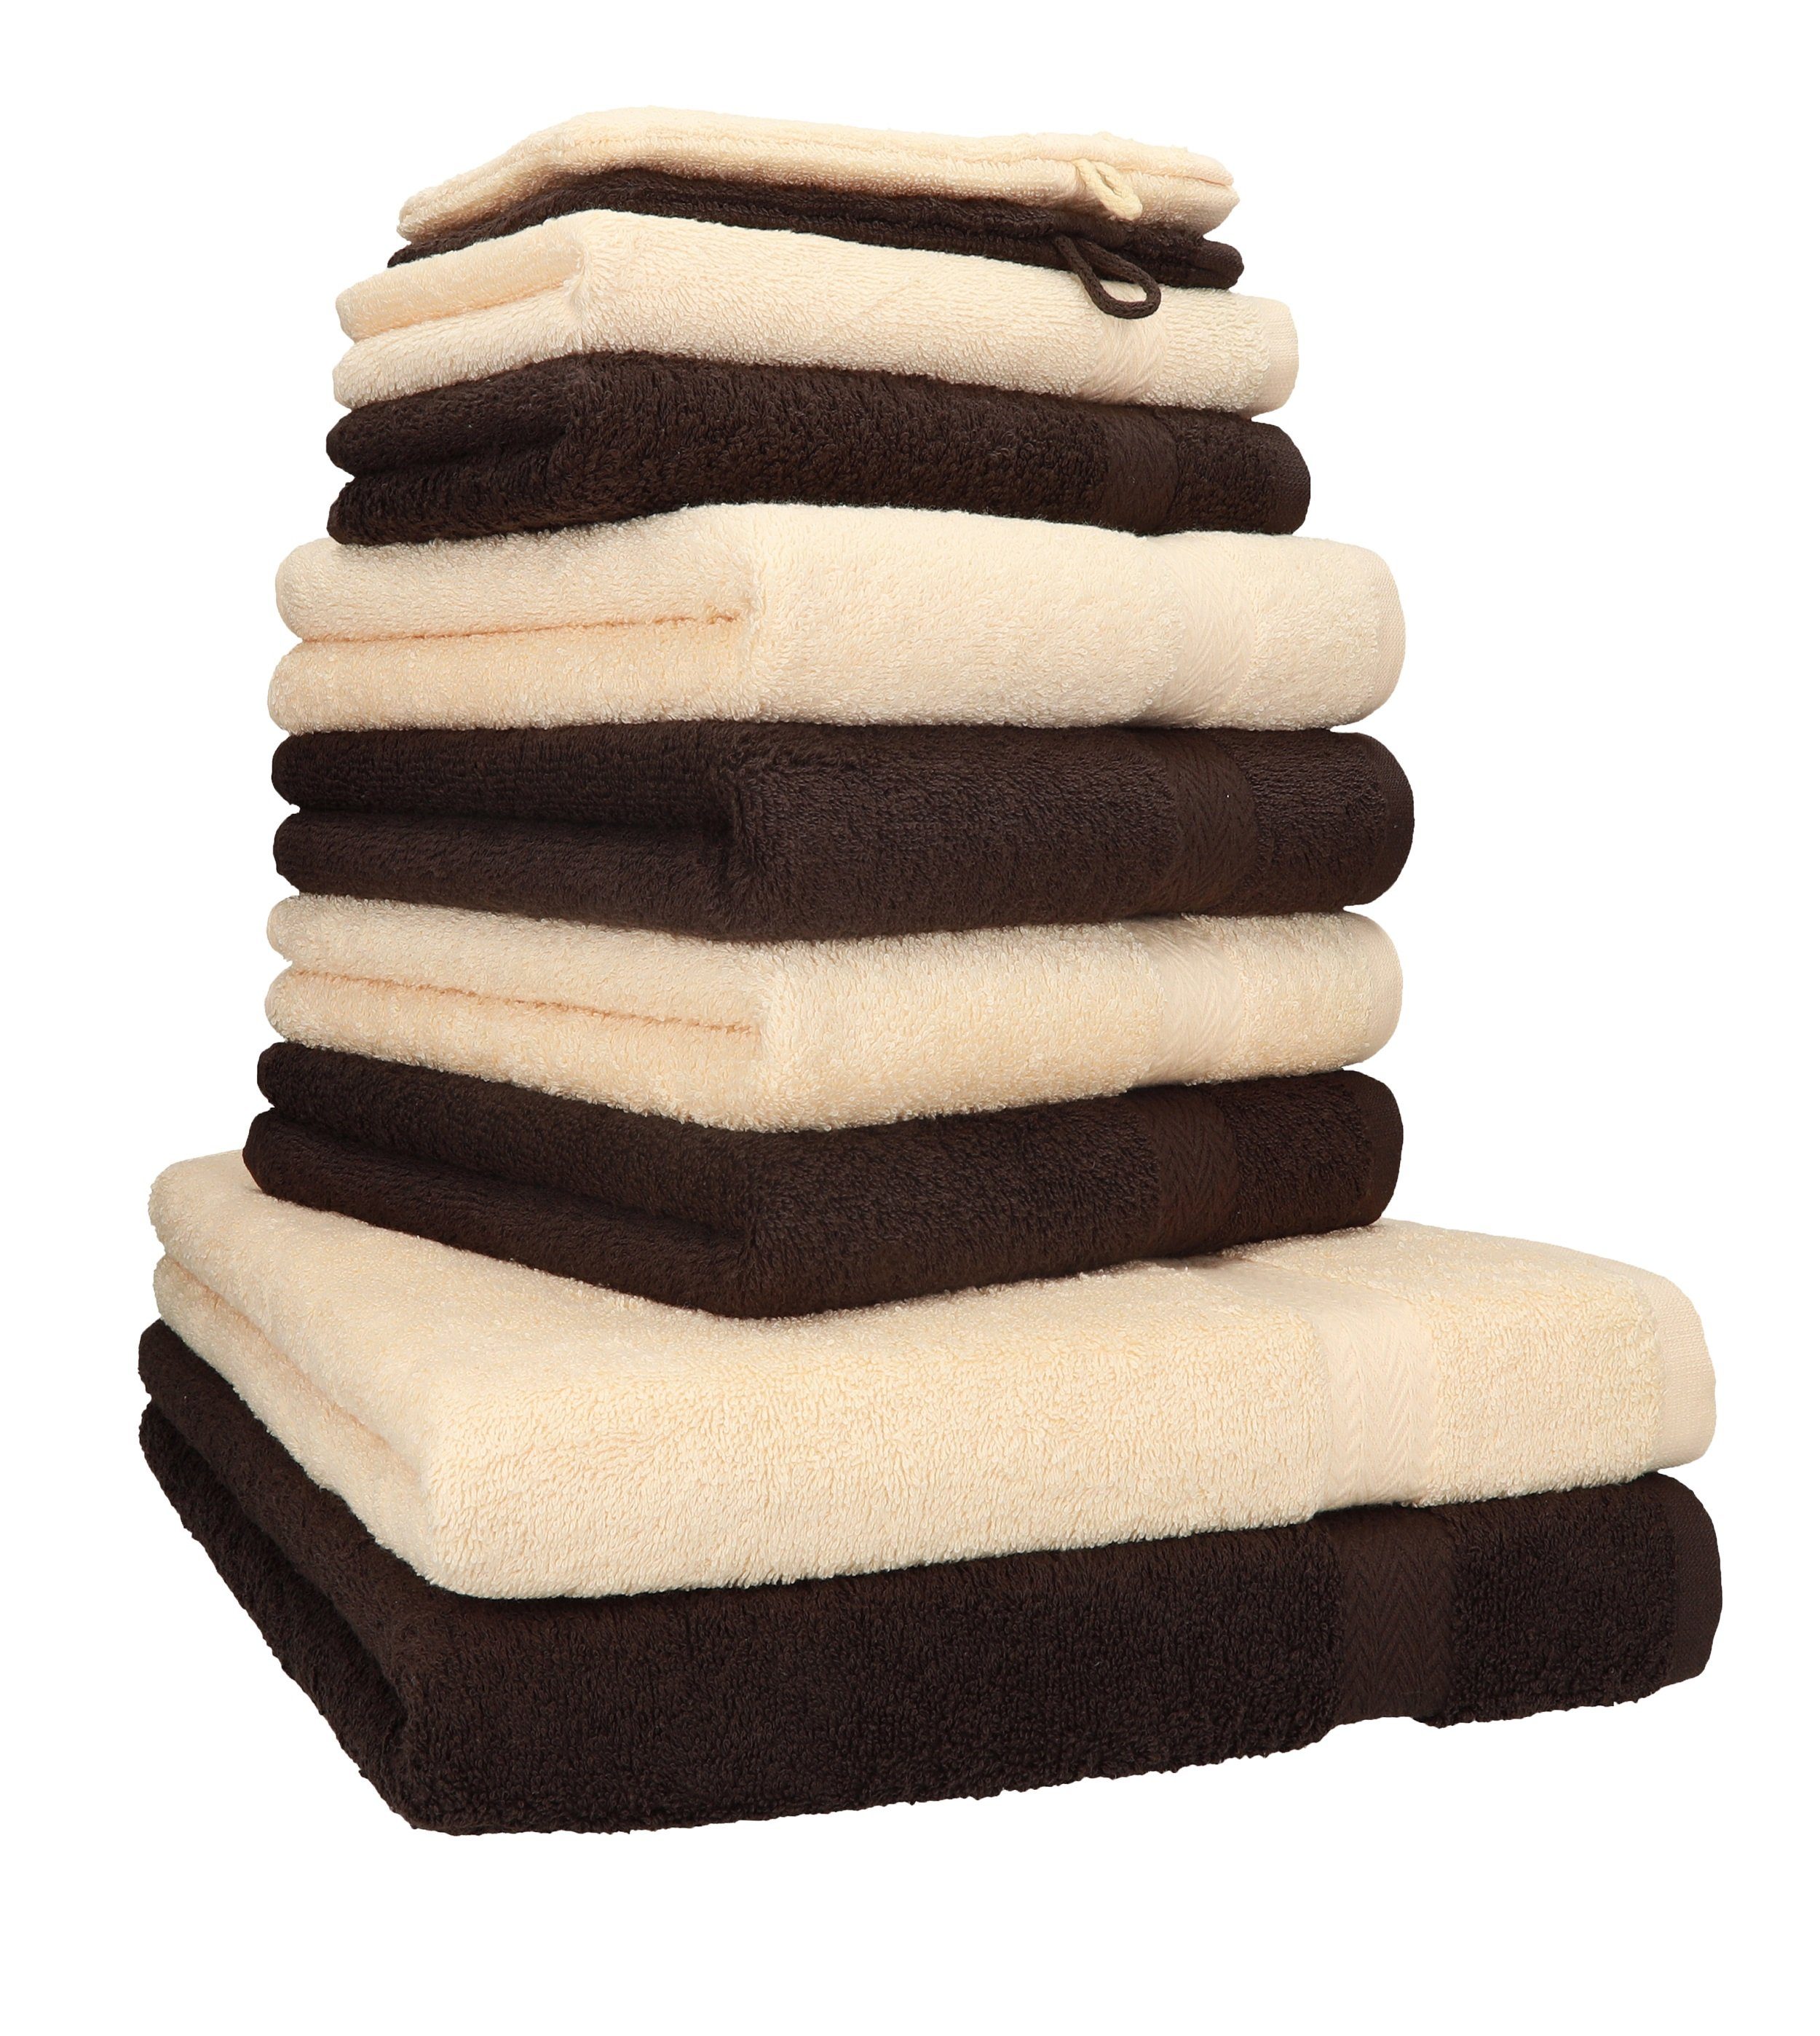 Betz Handtuch Set 10-TLG. Handtuch-Set Premium Farbe Beige & Dunkelbraun, 100% Baumwolle, (10-tlg)